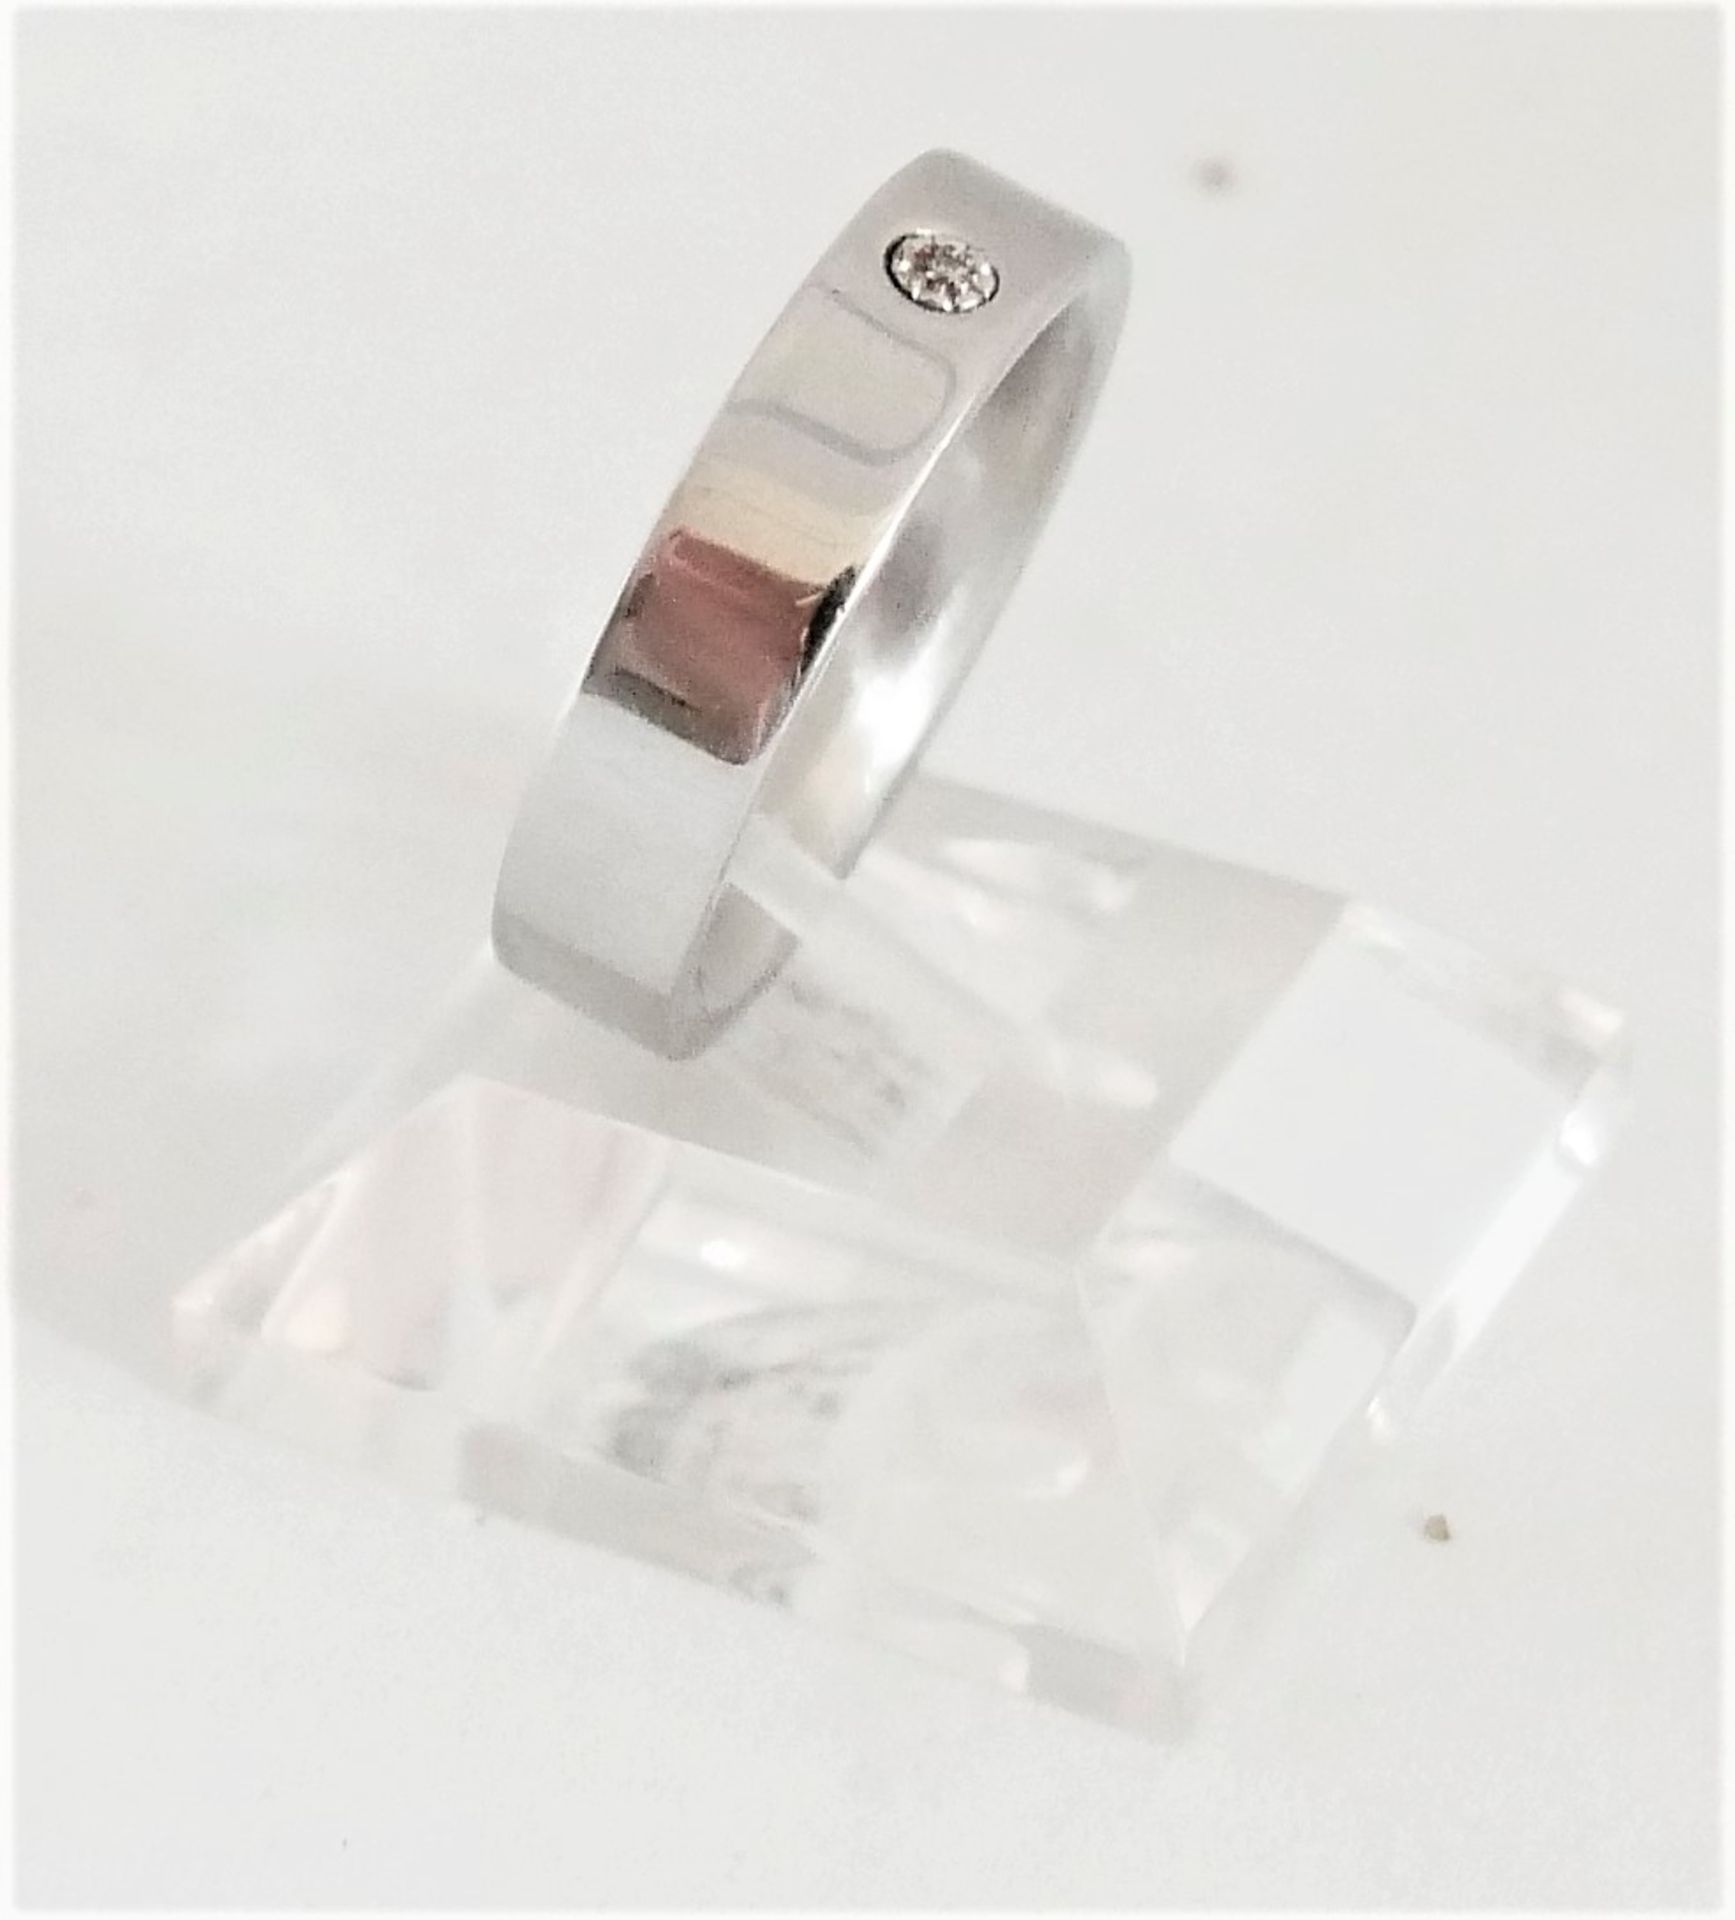 Damenring Morellato Love Ring, Edelstein, mit kleinem Diamant besetzt. Ringgröße 68 - Image 3 of 3